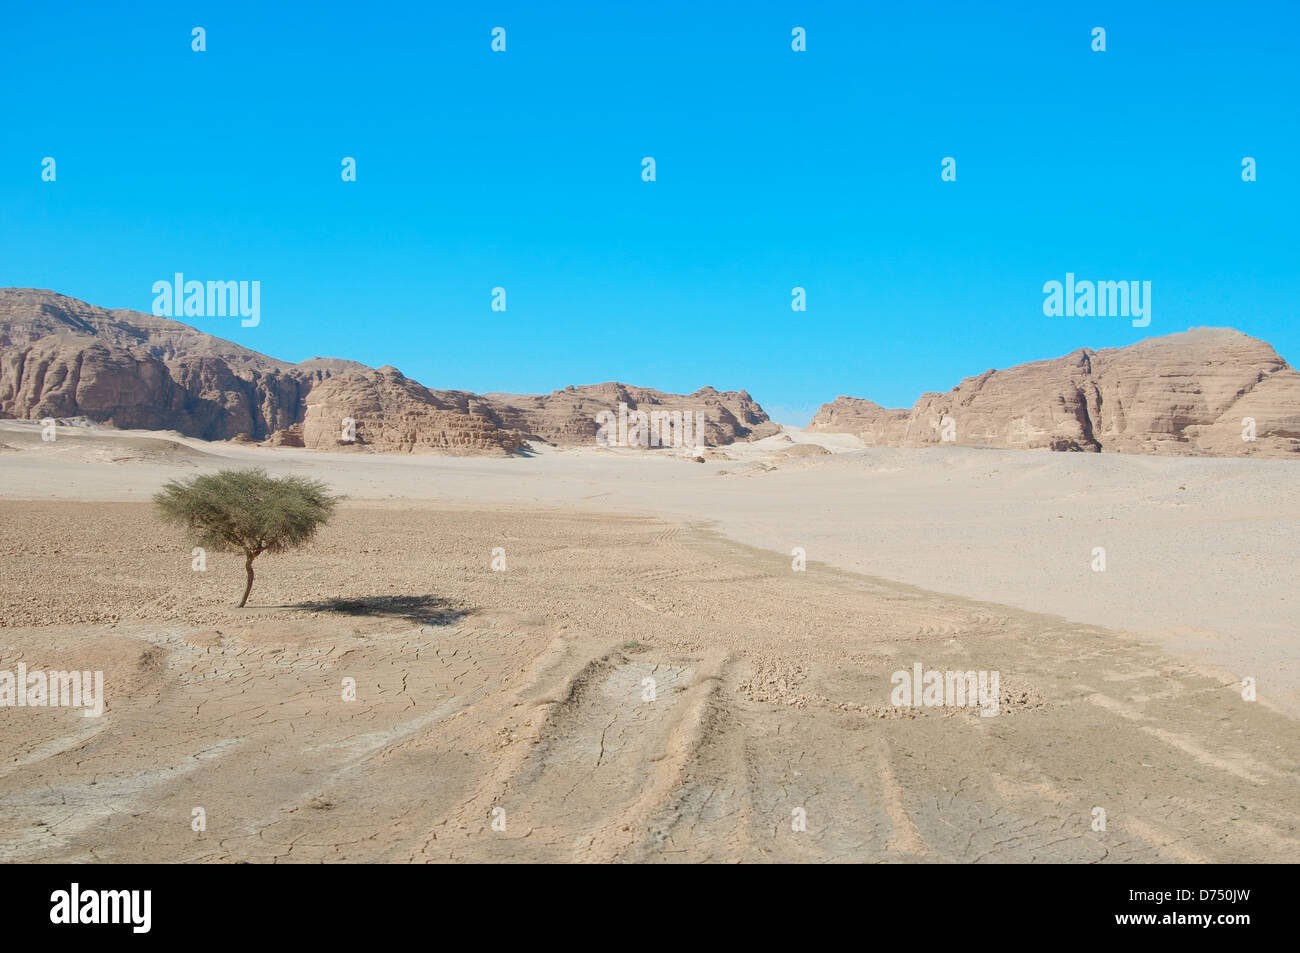 Acacia près de la fin de sa gamme dans le désert, péninsule du Sinaï, Égypte Banque D'Images